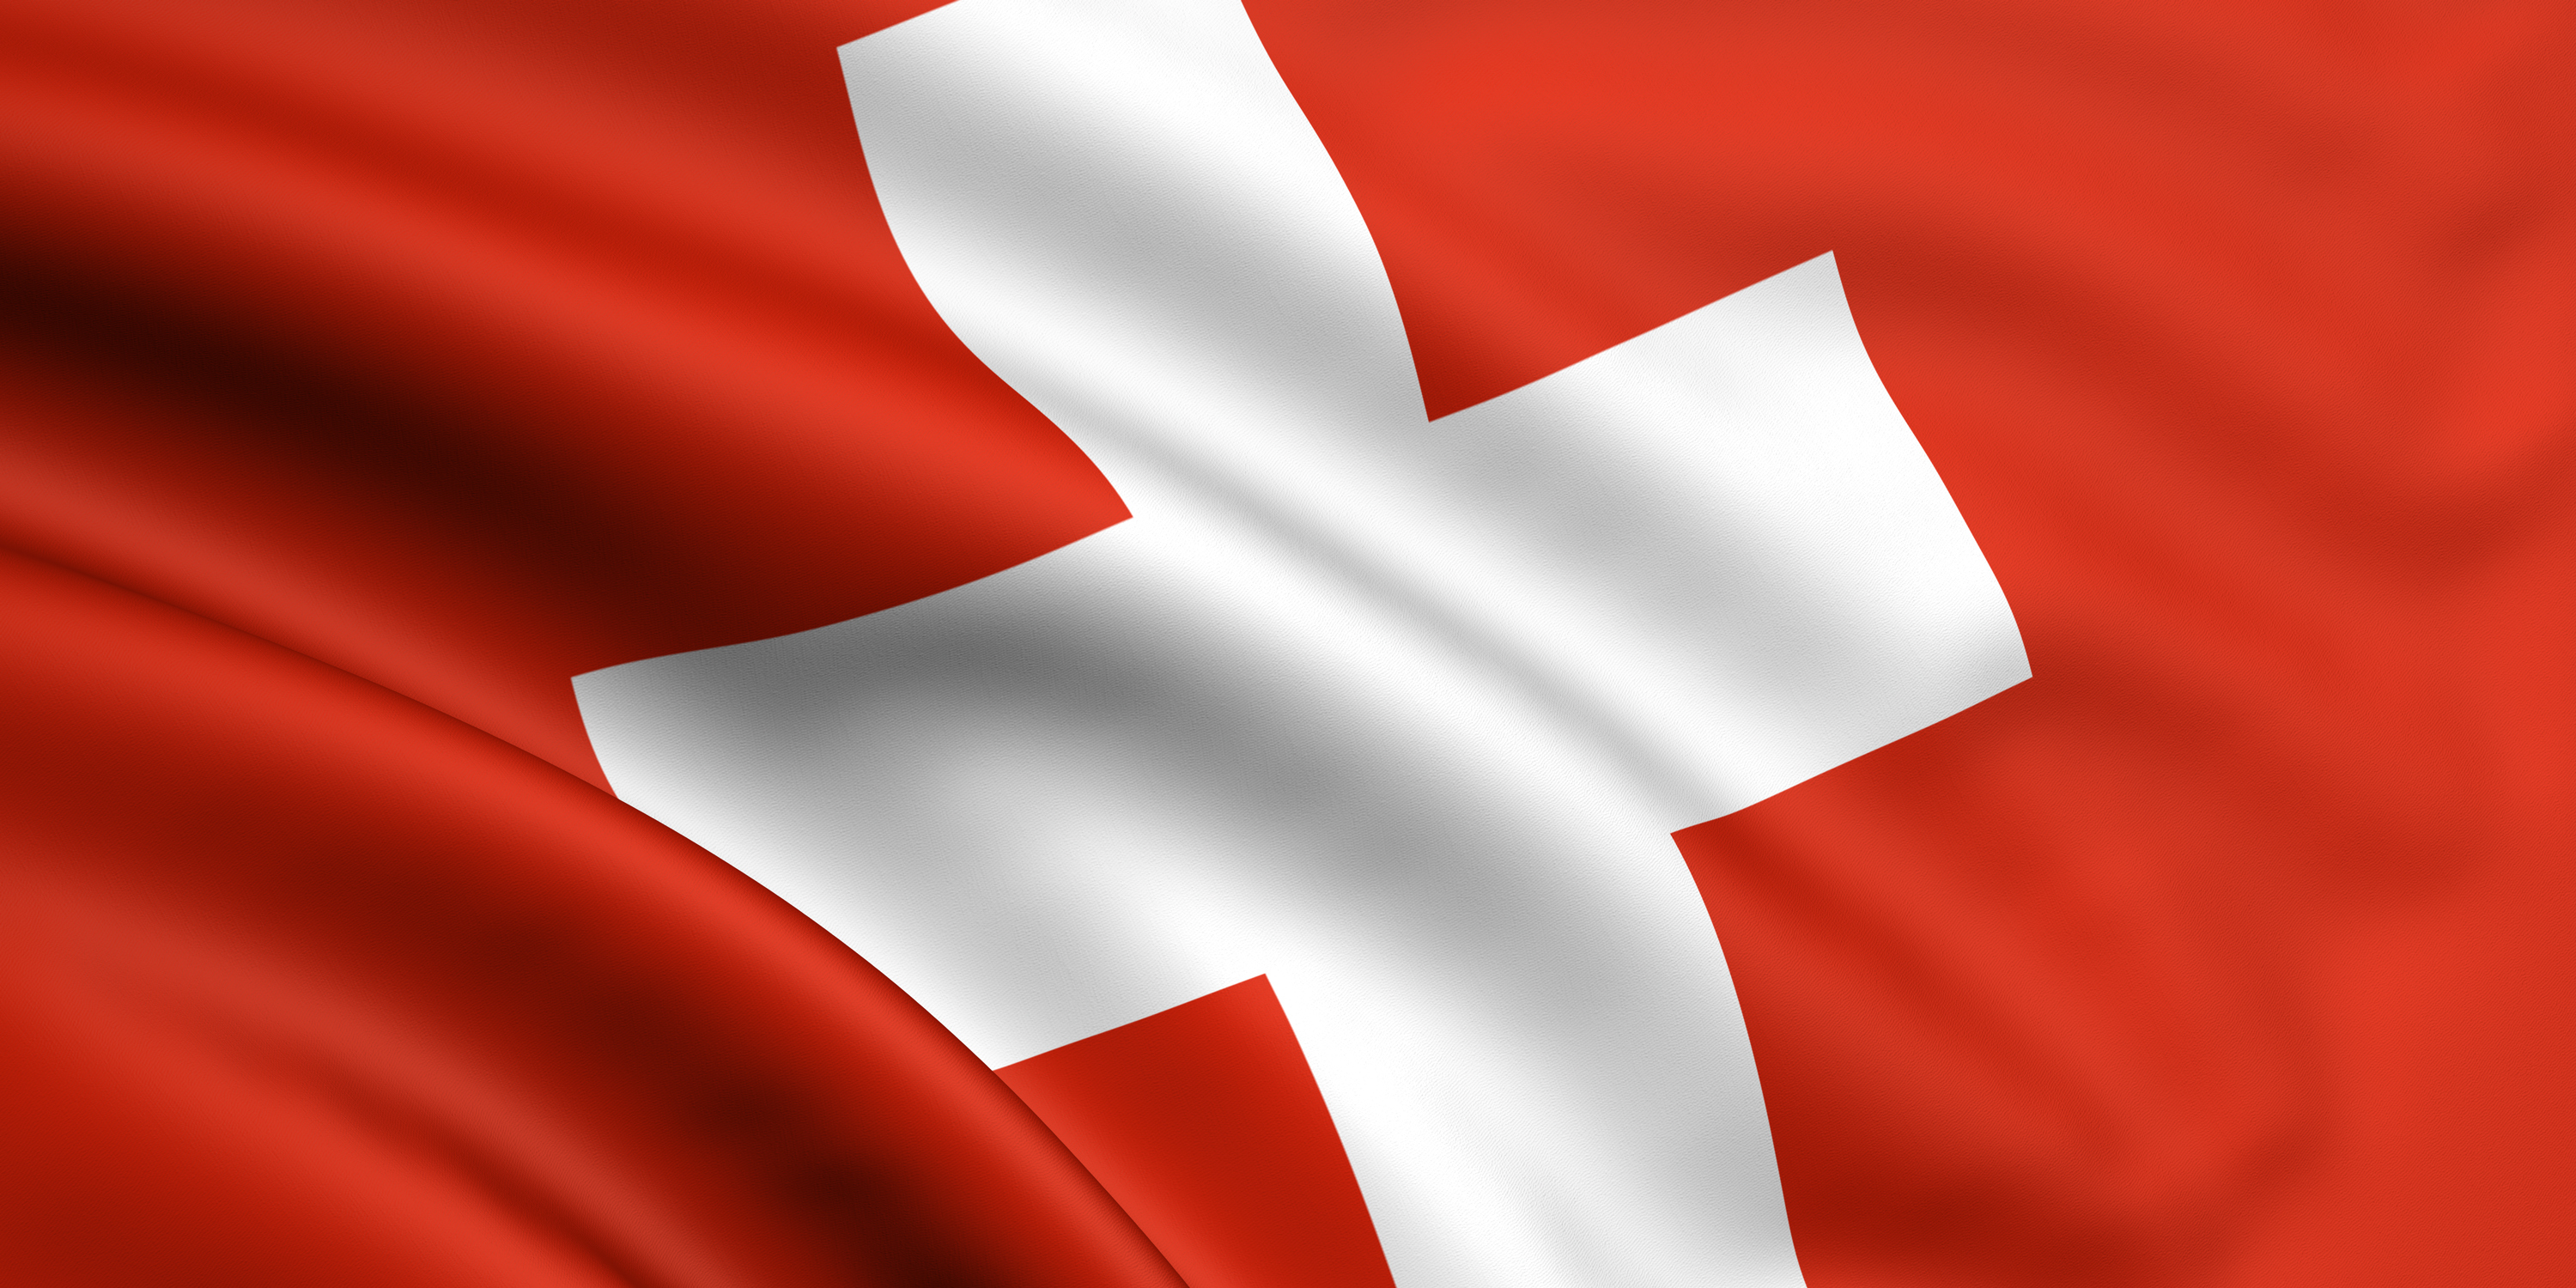 financialounge -  Blue Chips PMI svizzera